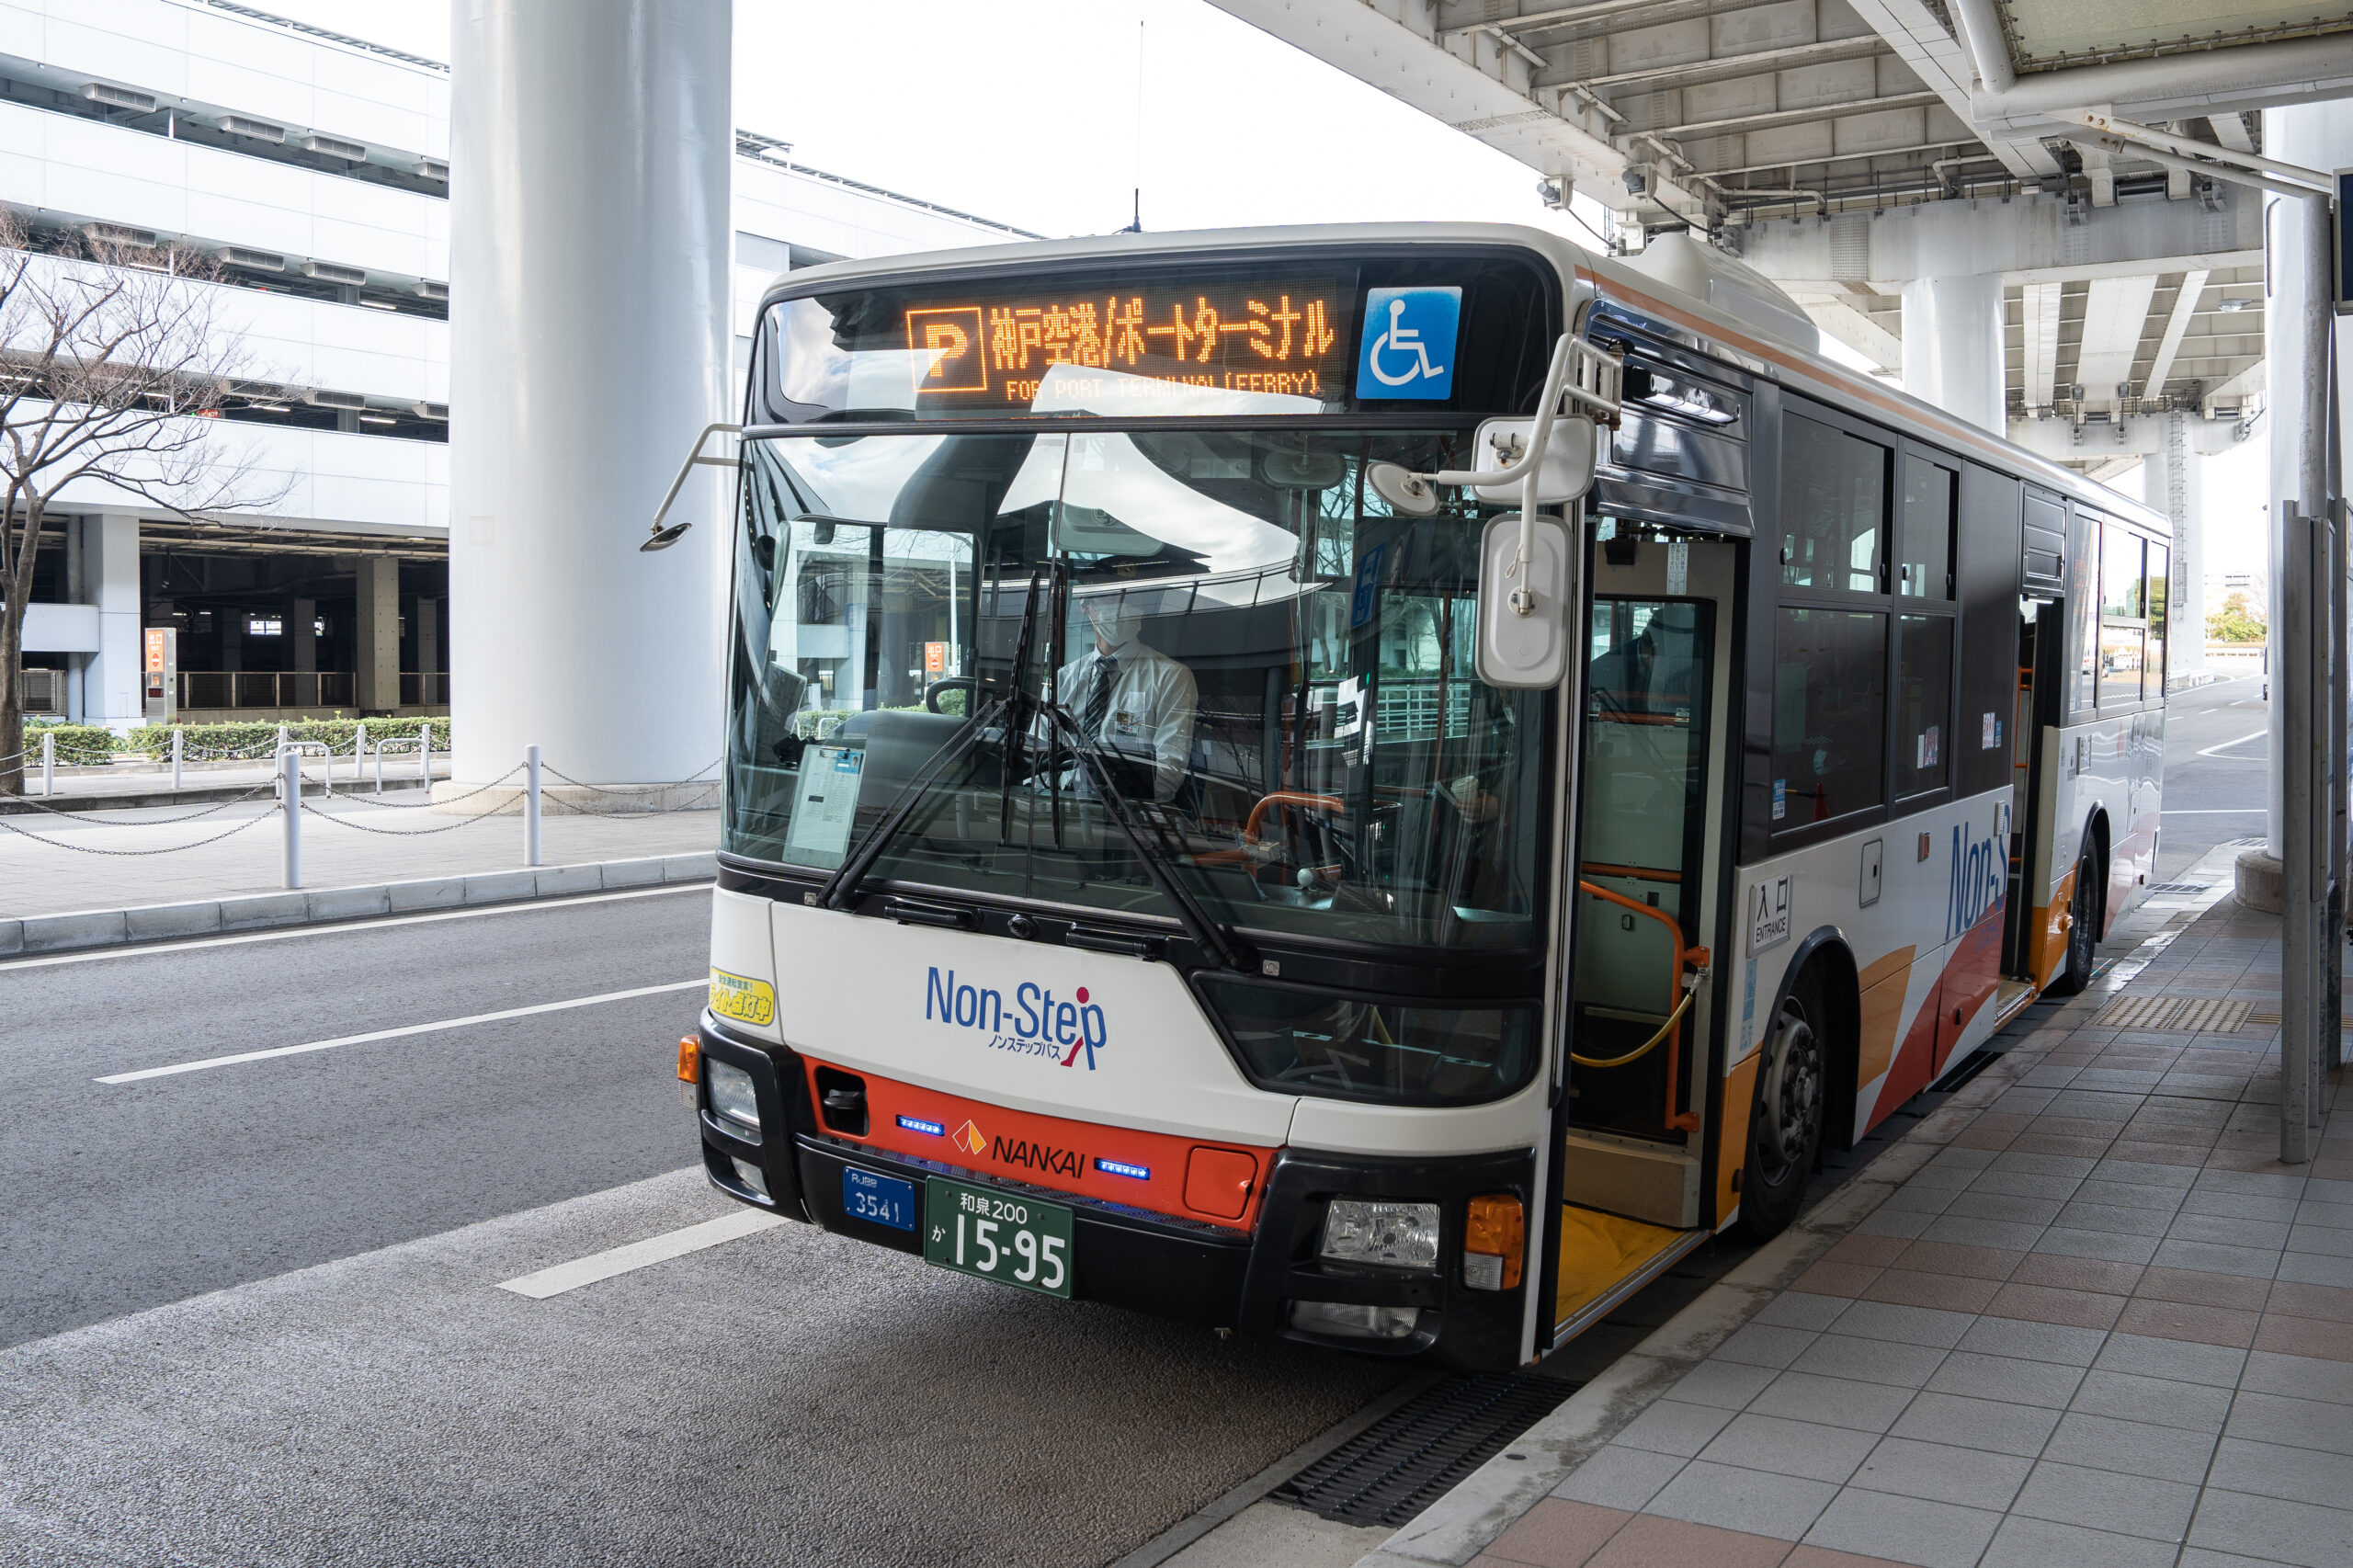 神戶高速船優惠價500日圓，關西機場往來神戶最快最划算交通方式，神戶旅遊首選！